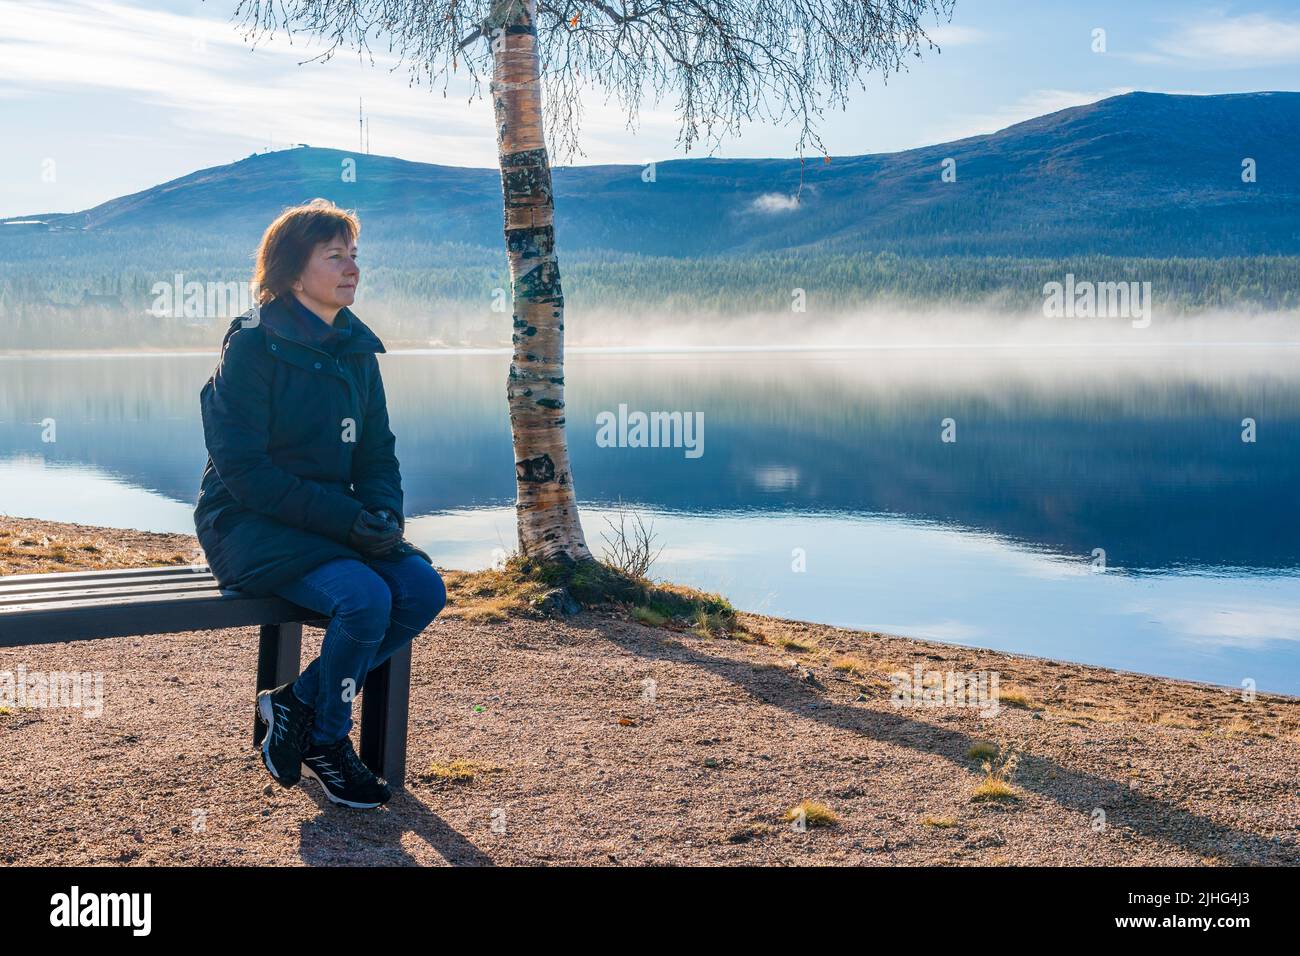 Frau, die auf einer Bank am Strand sitzt und die schöne Aussicht auf Berg und Fluss beobachtet, Gällivare, Schwedisch Lappland, Schweden Stockfoto